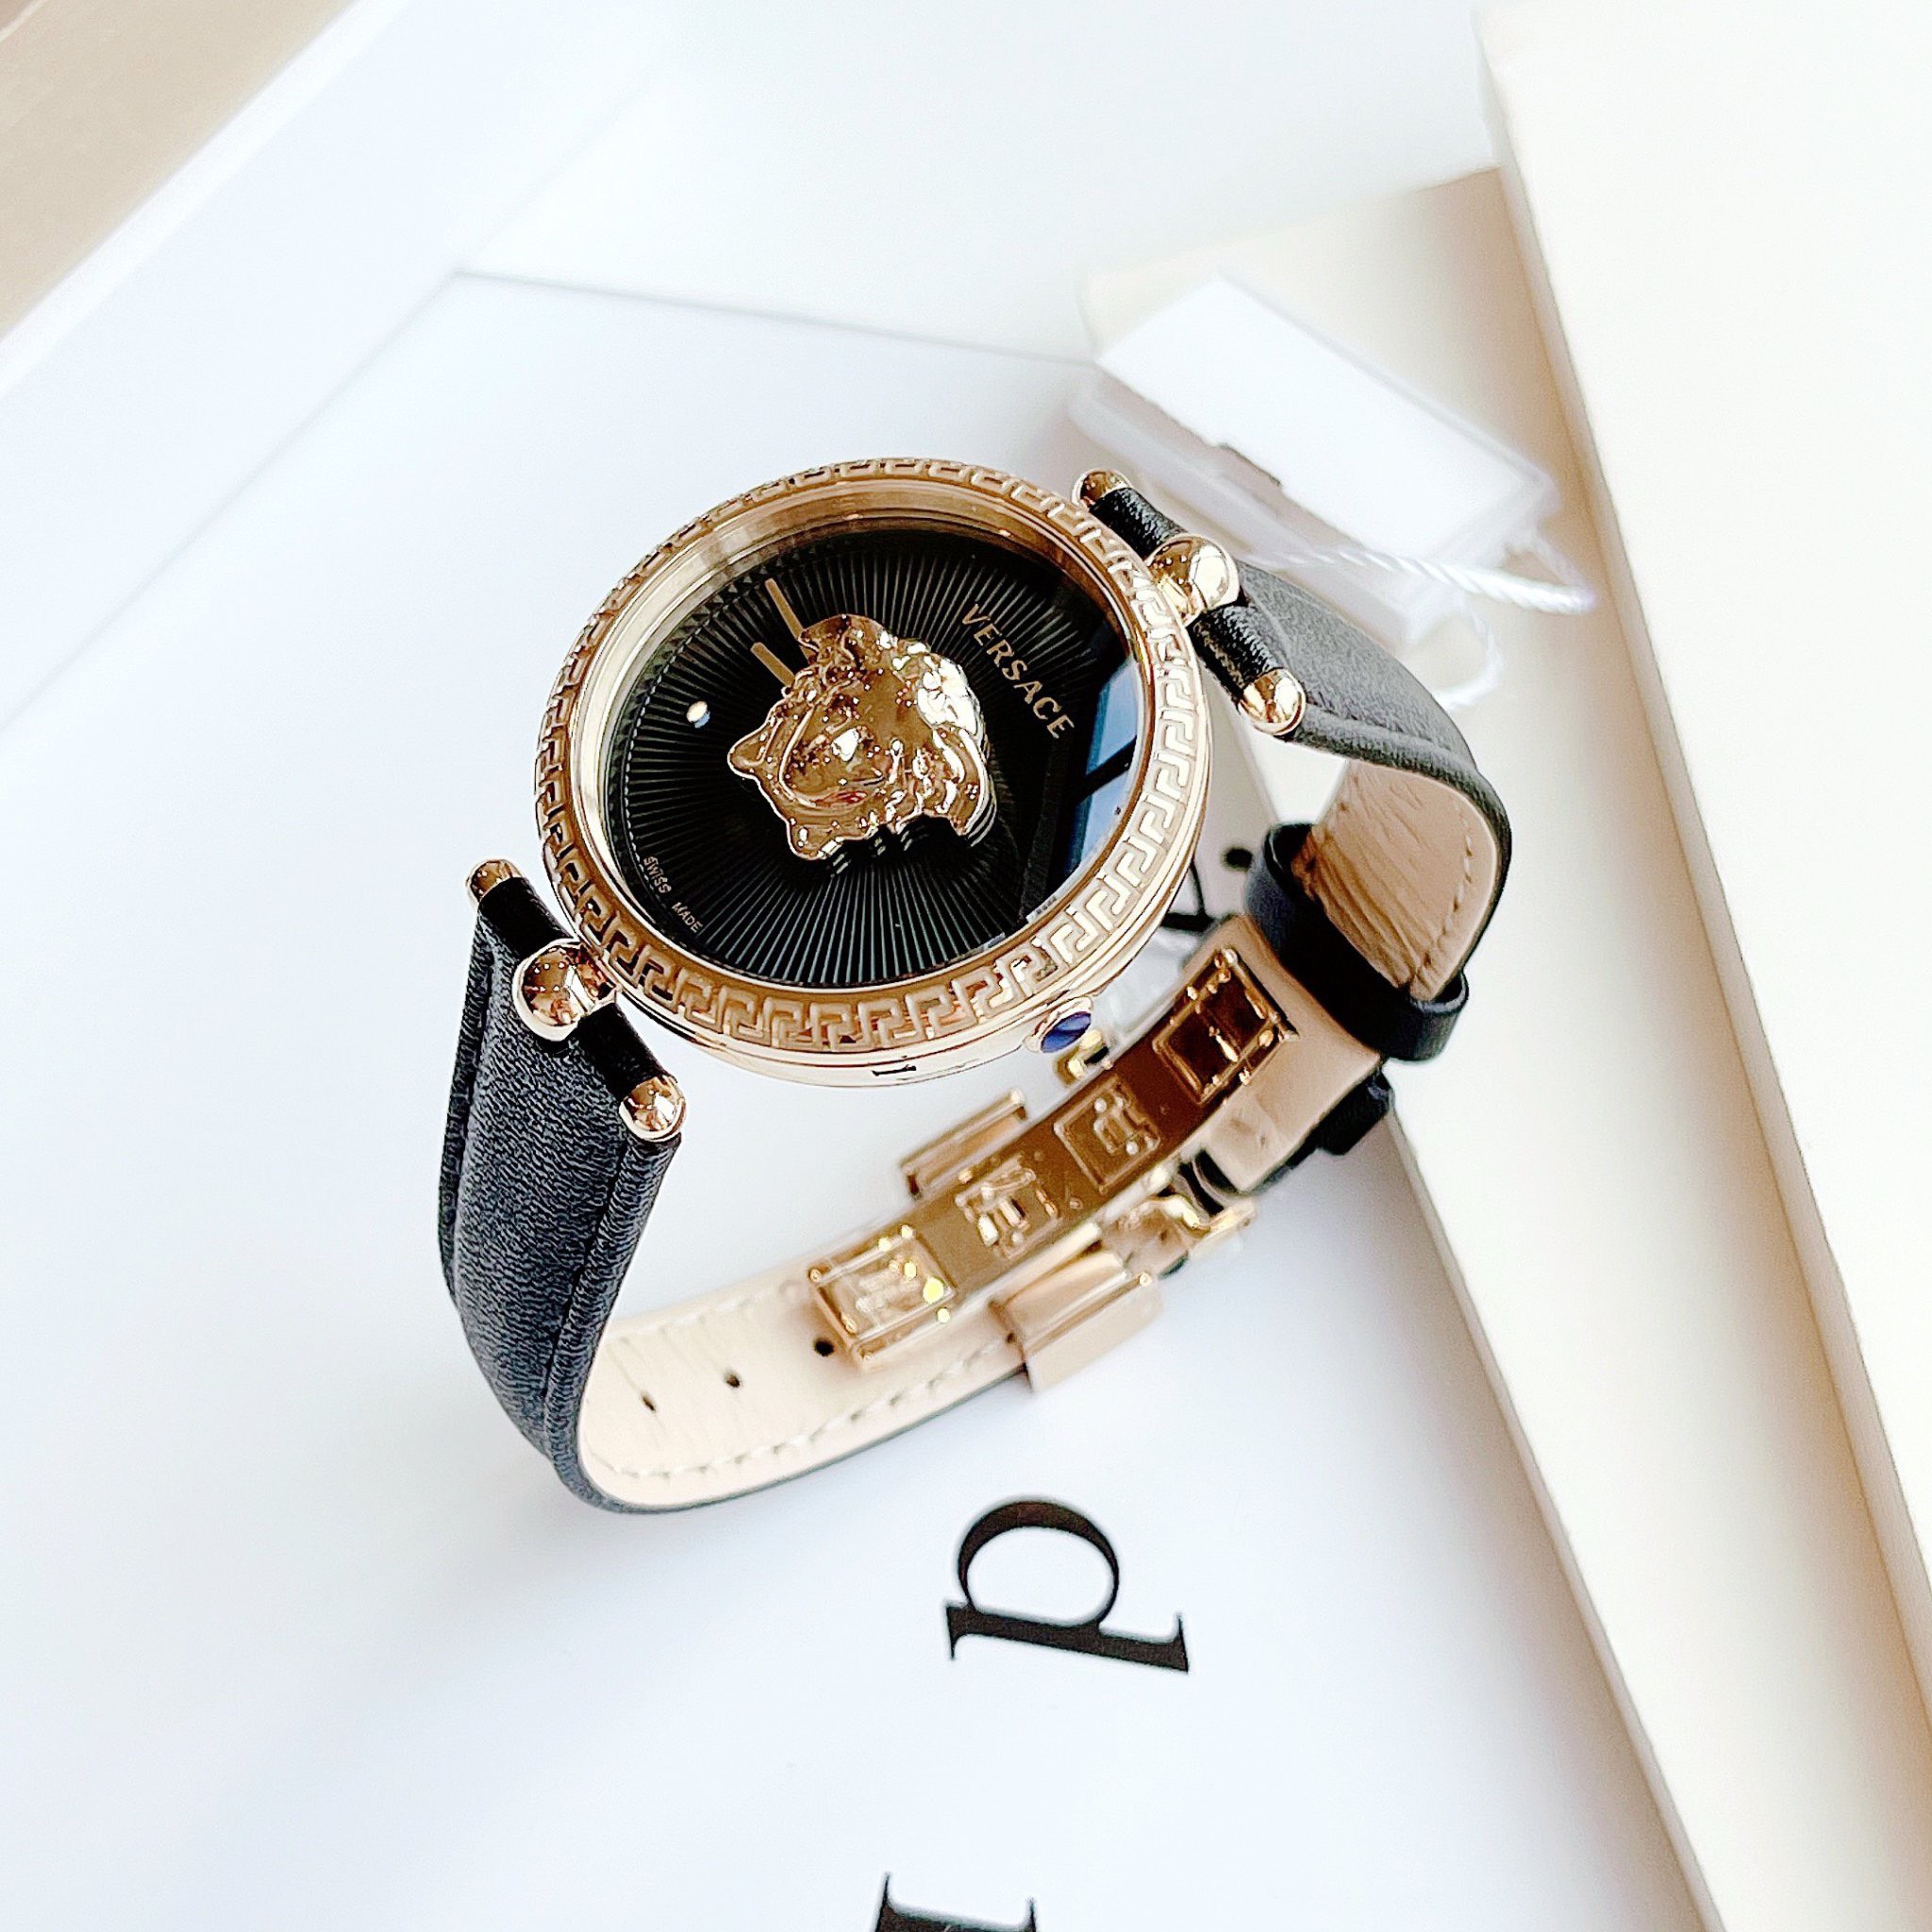 Đồng hồ Versace Palazzo Thiết kế kinh điển nhà VS với logo medusa đắp nổi cực độc đáo  Màu đen viền gold basic